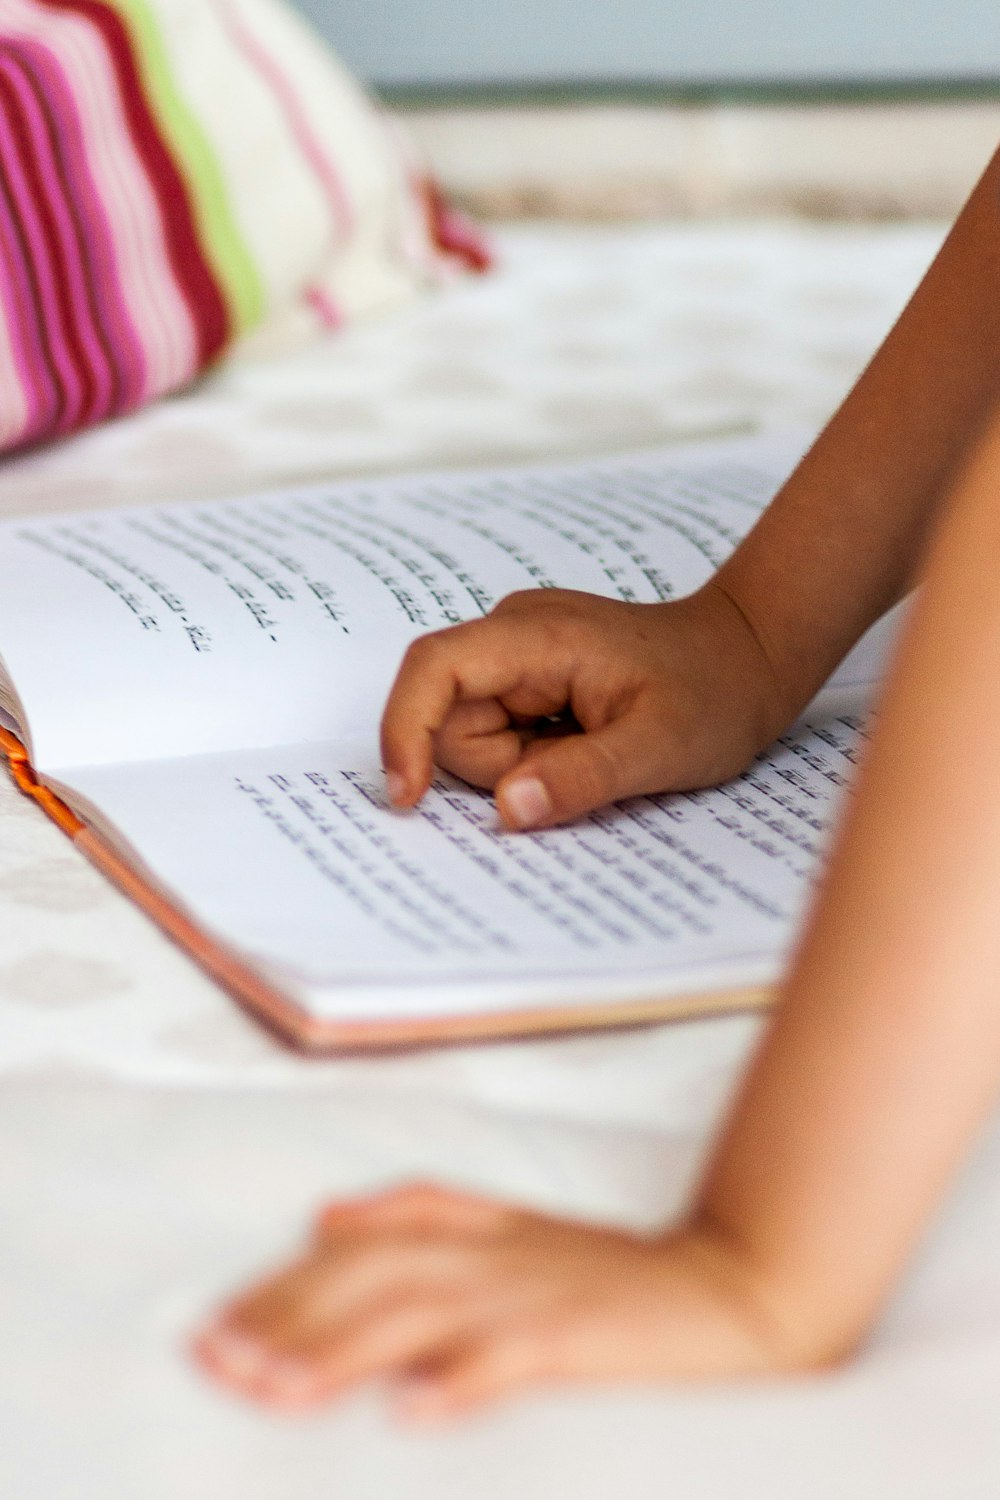 La mano de un niño apuntando en el libro de escritura devanagari